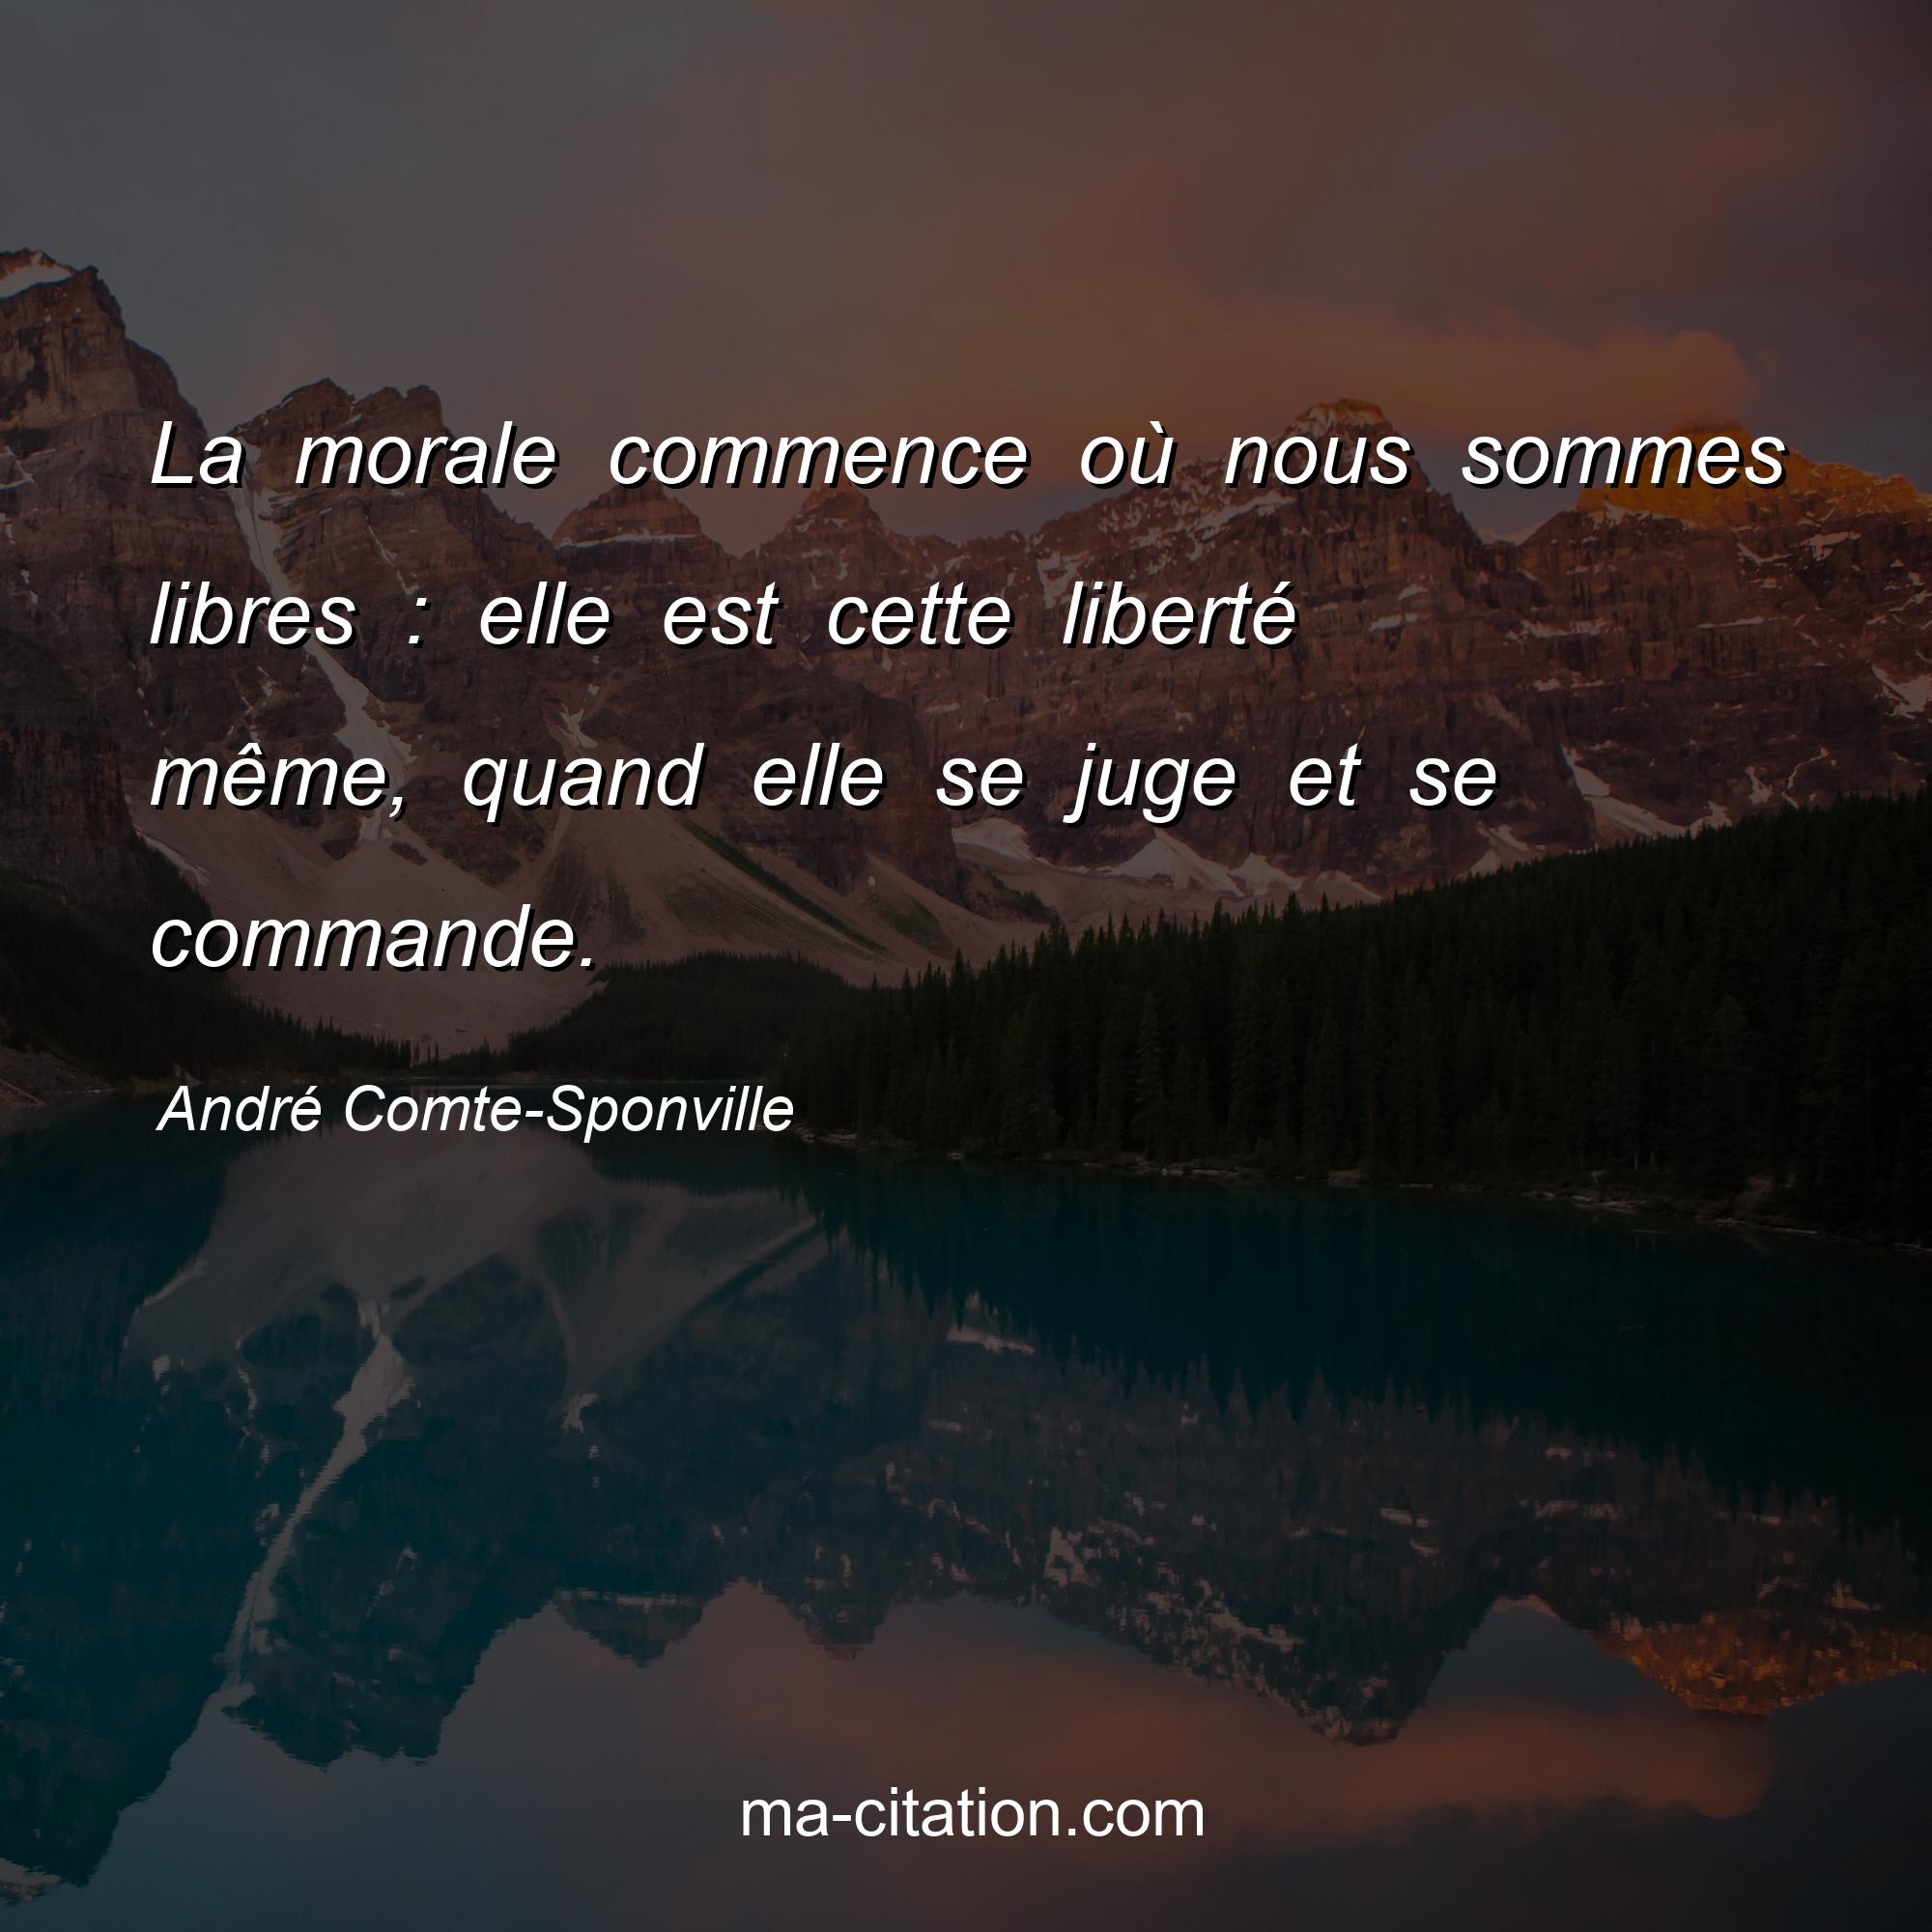 André Comte-Sponville : La morale commence où nous sommes libres : elle est cette liberté même, quand elle se juge et se commande.